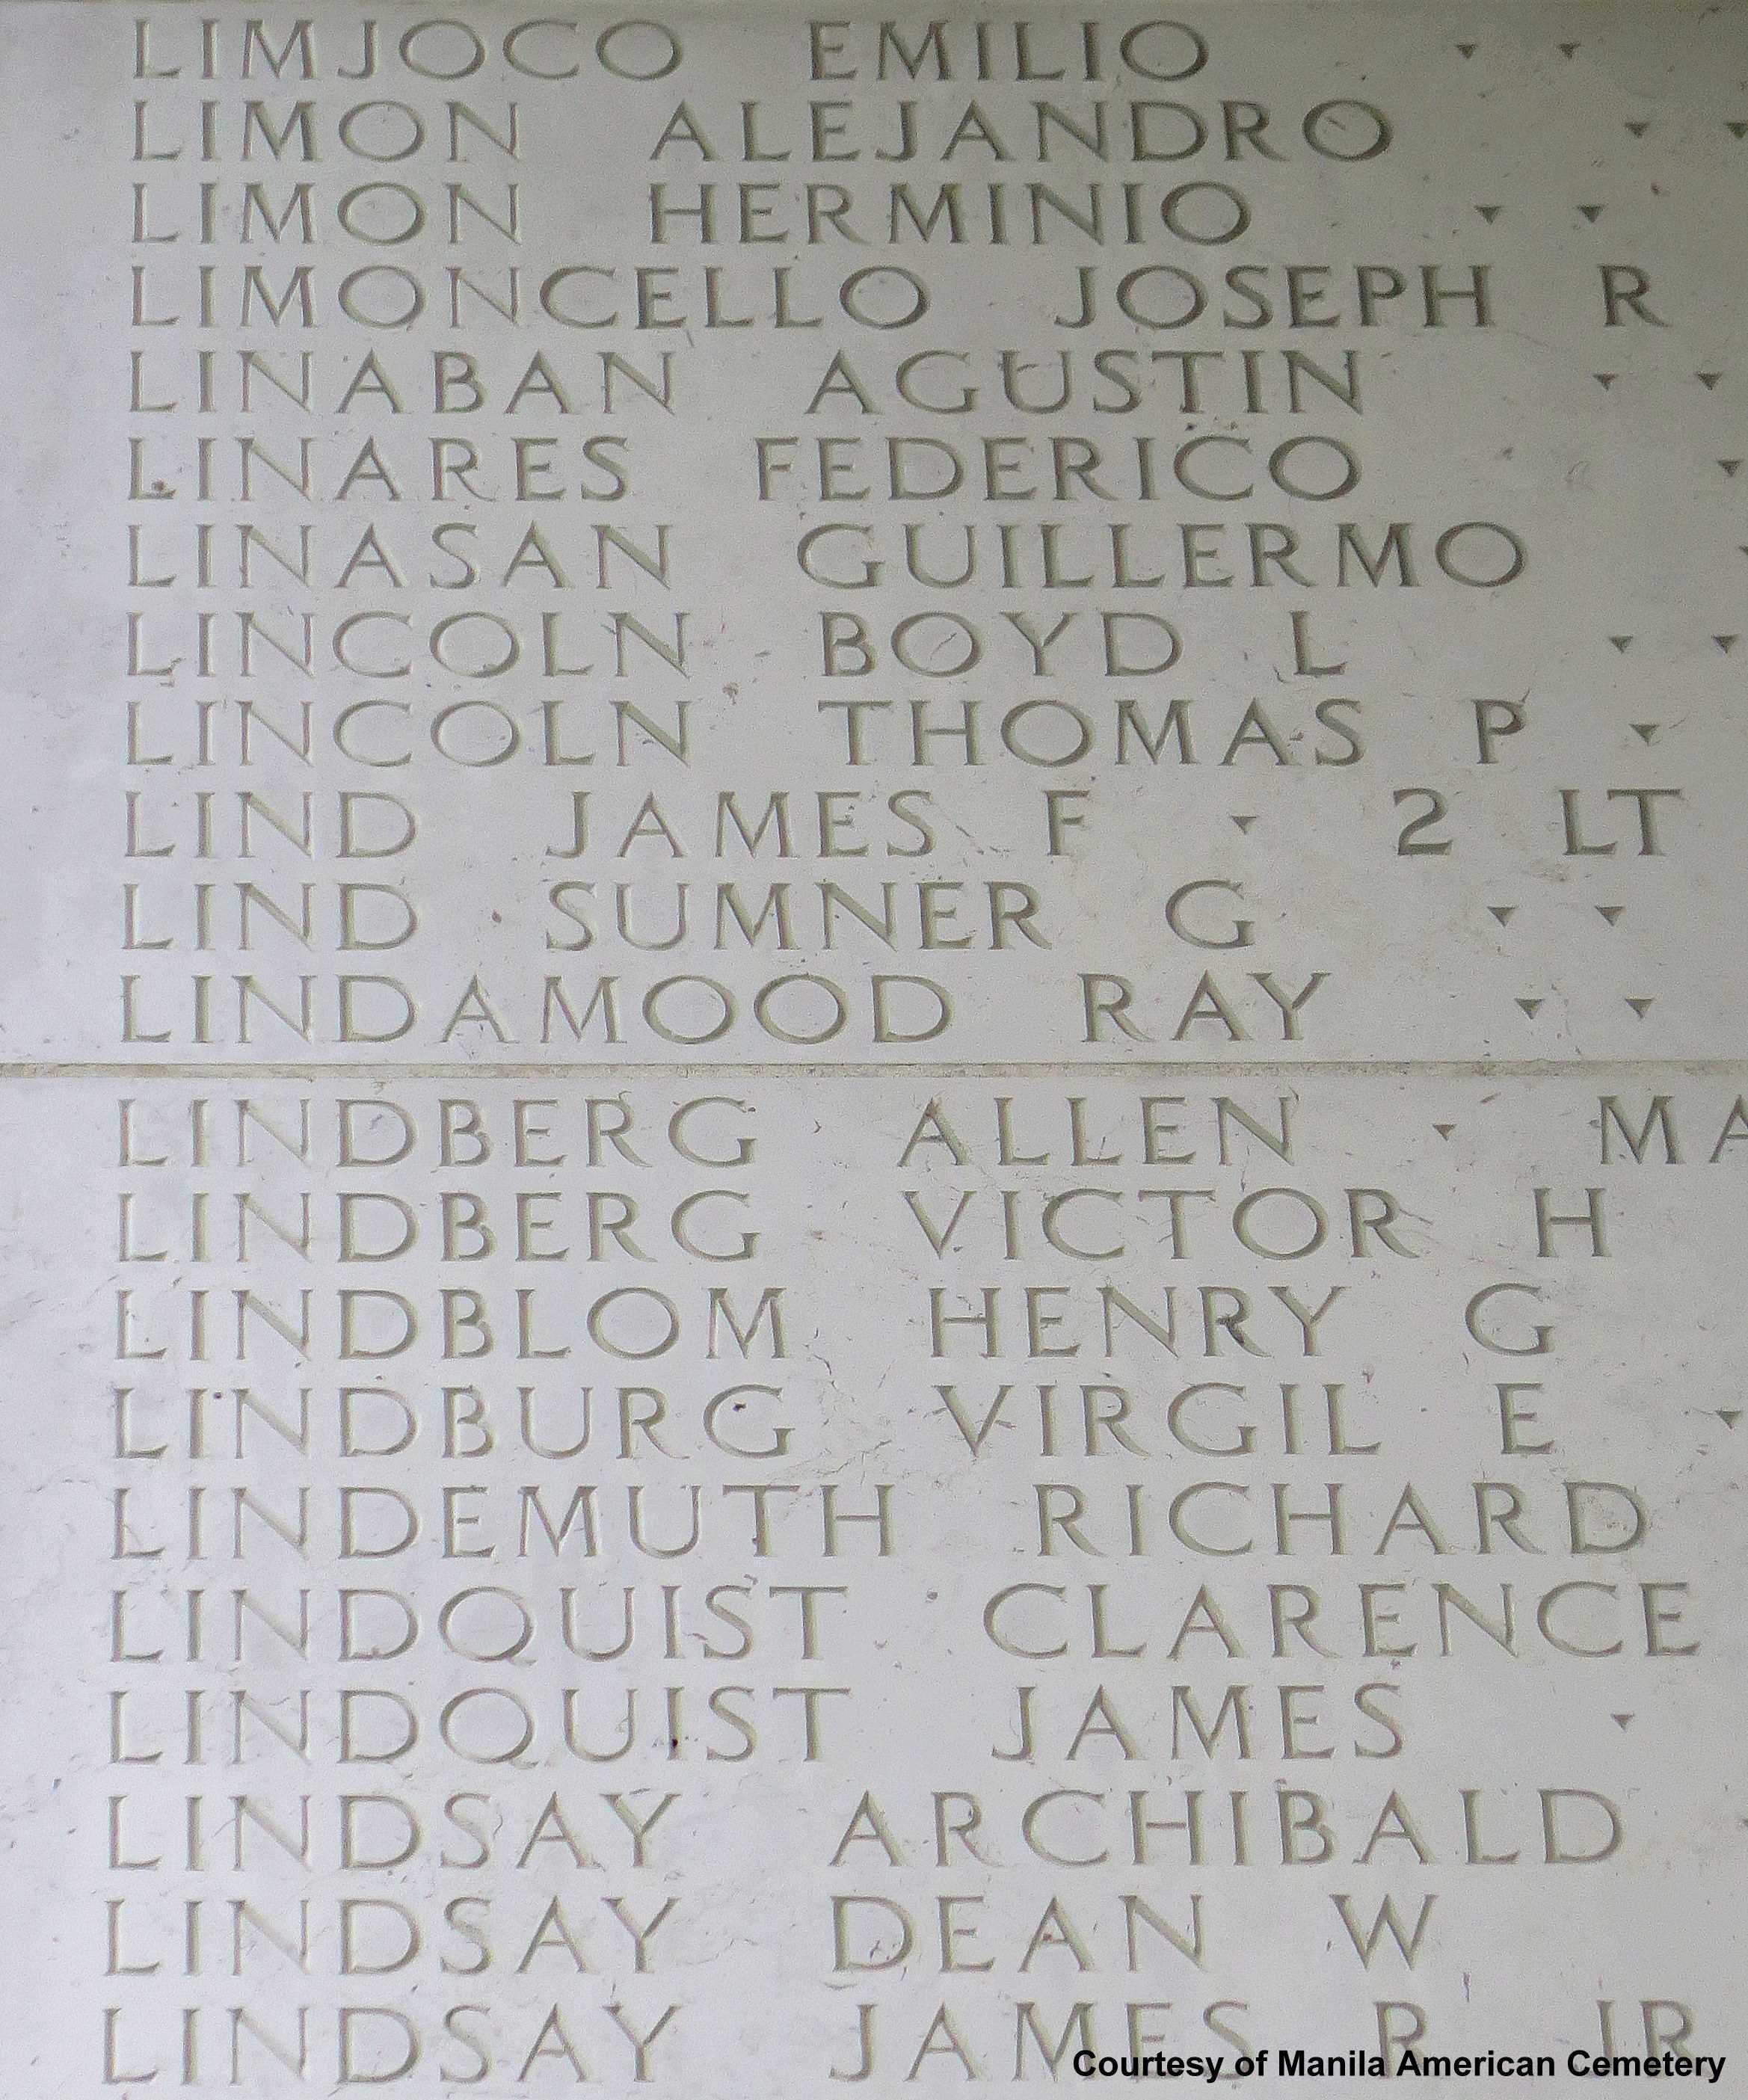 2nd Lt. James F. Lind 